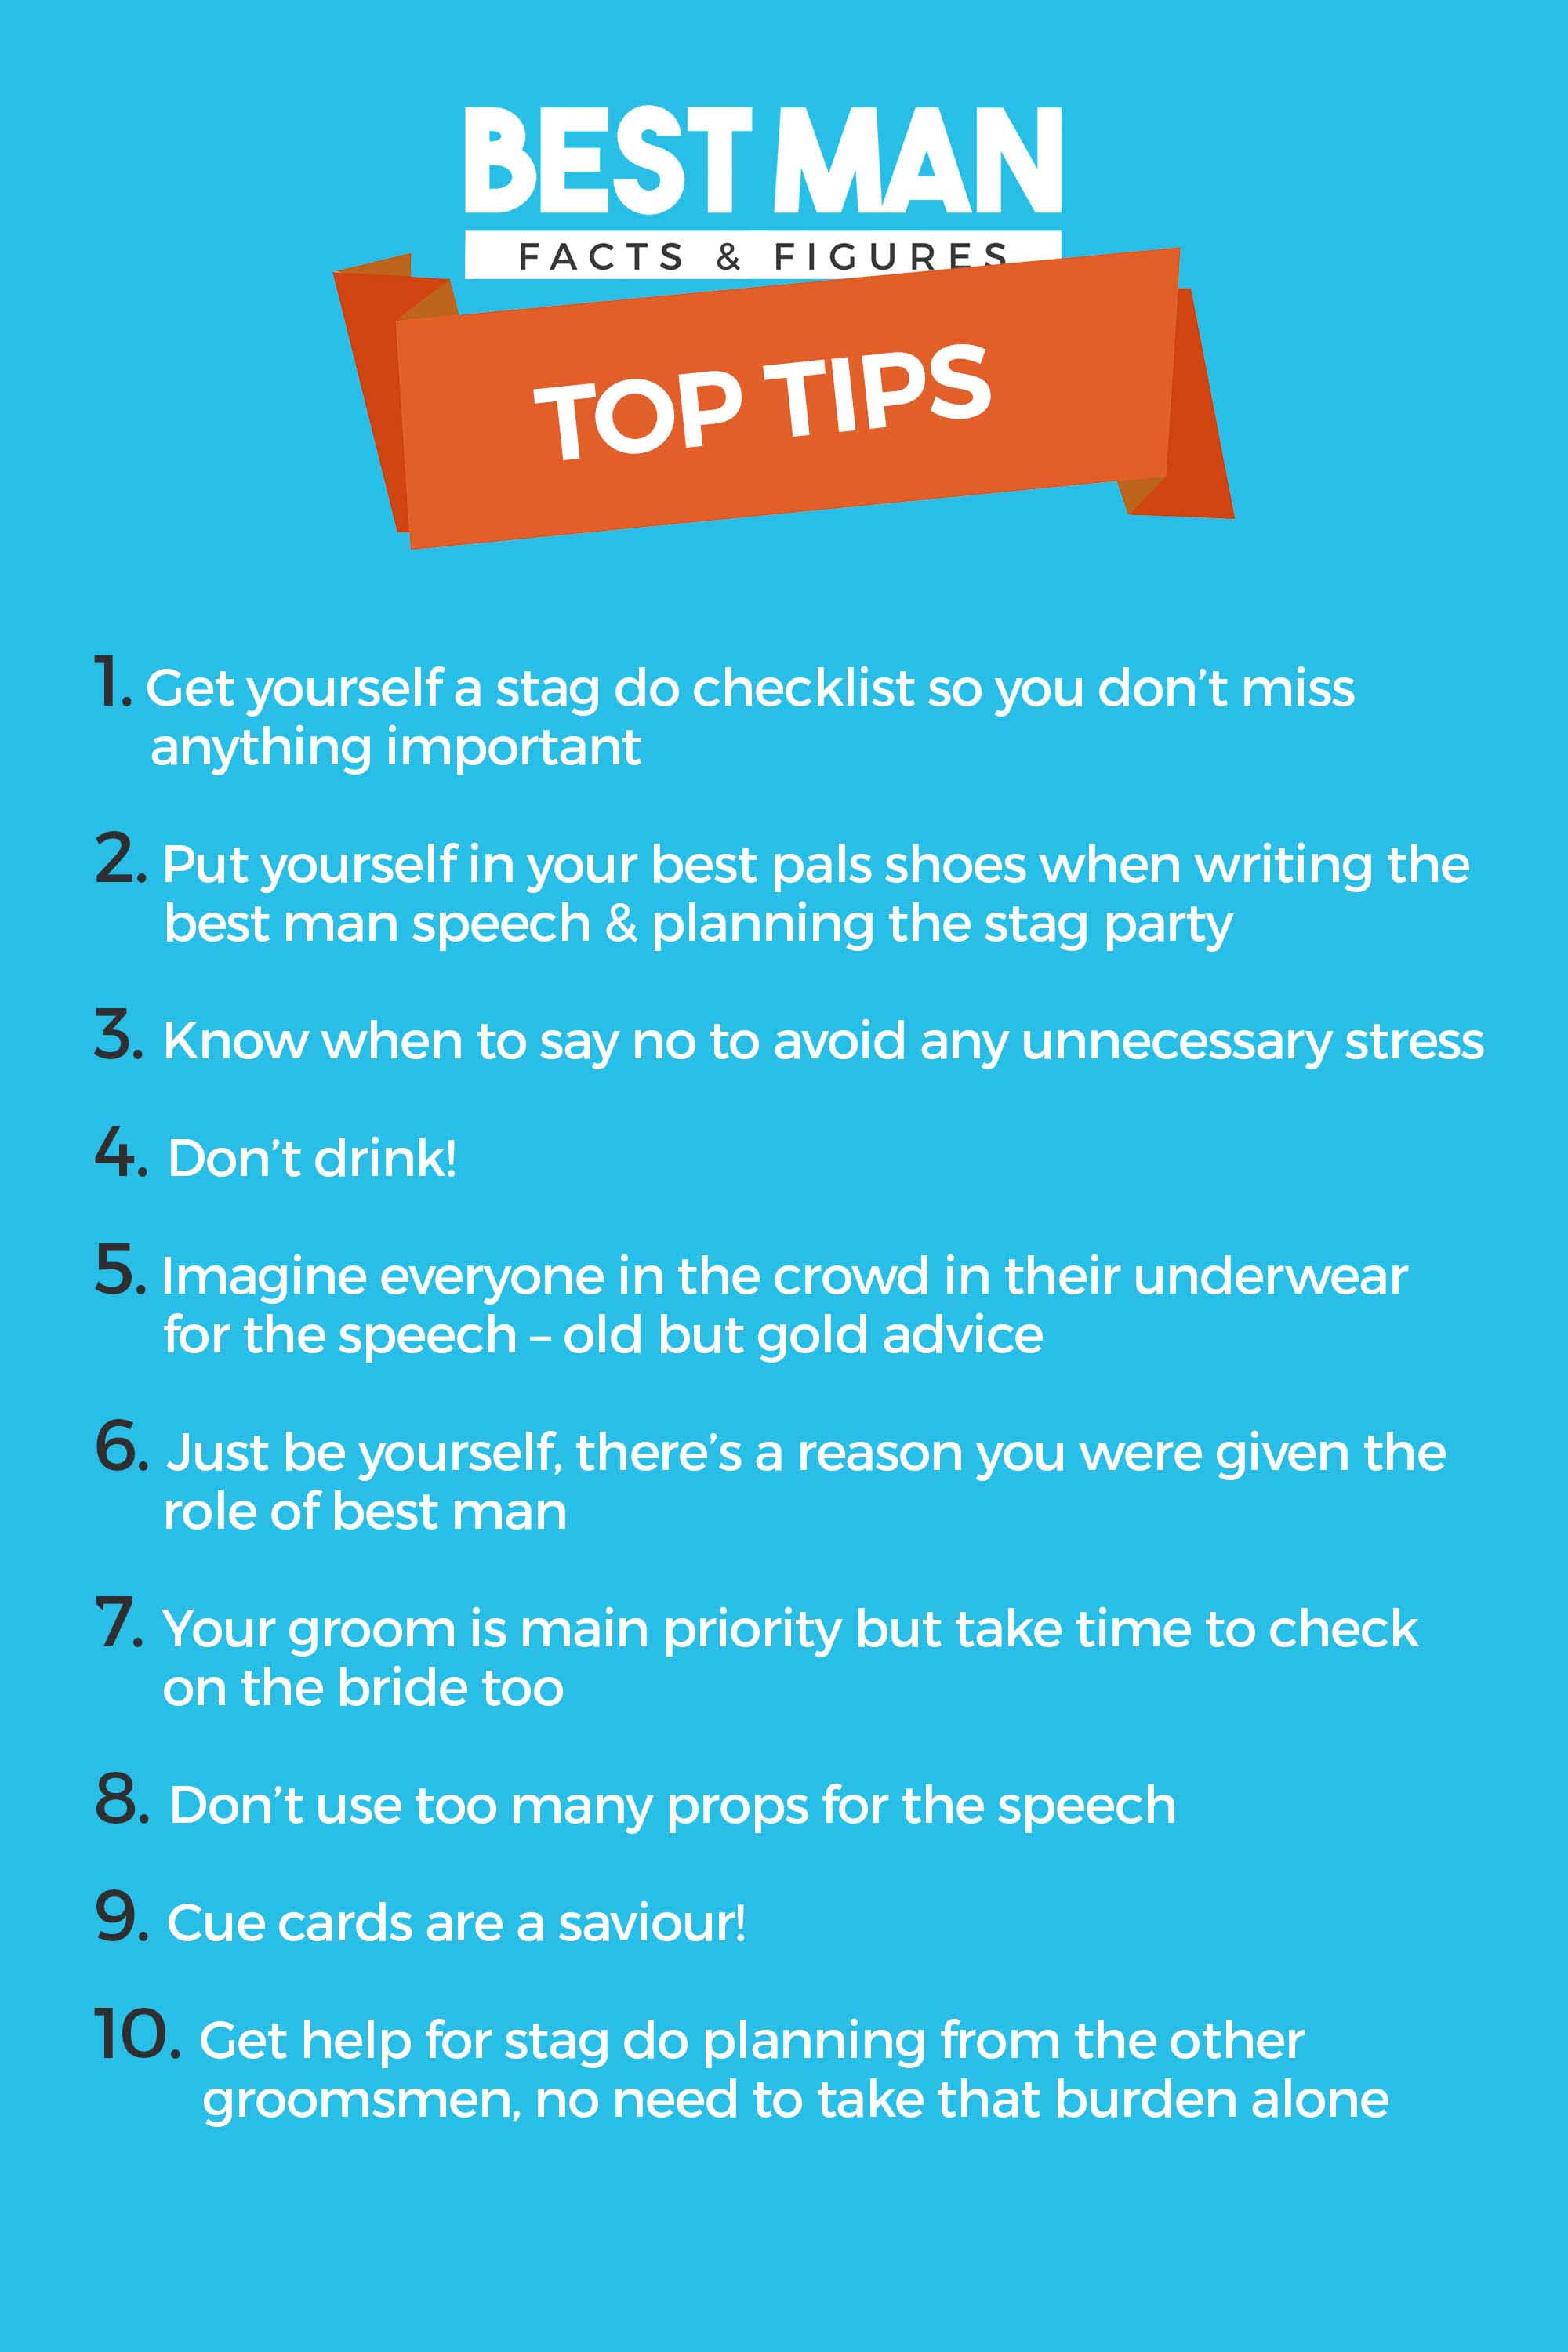 Best Man Facts & Figures - Top Tips